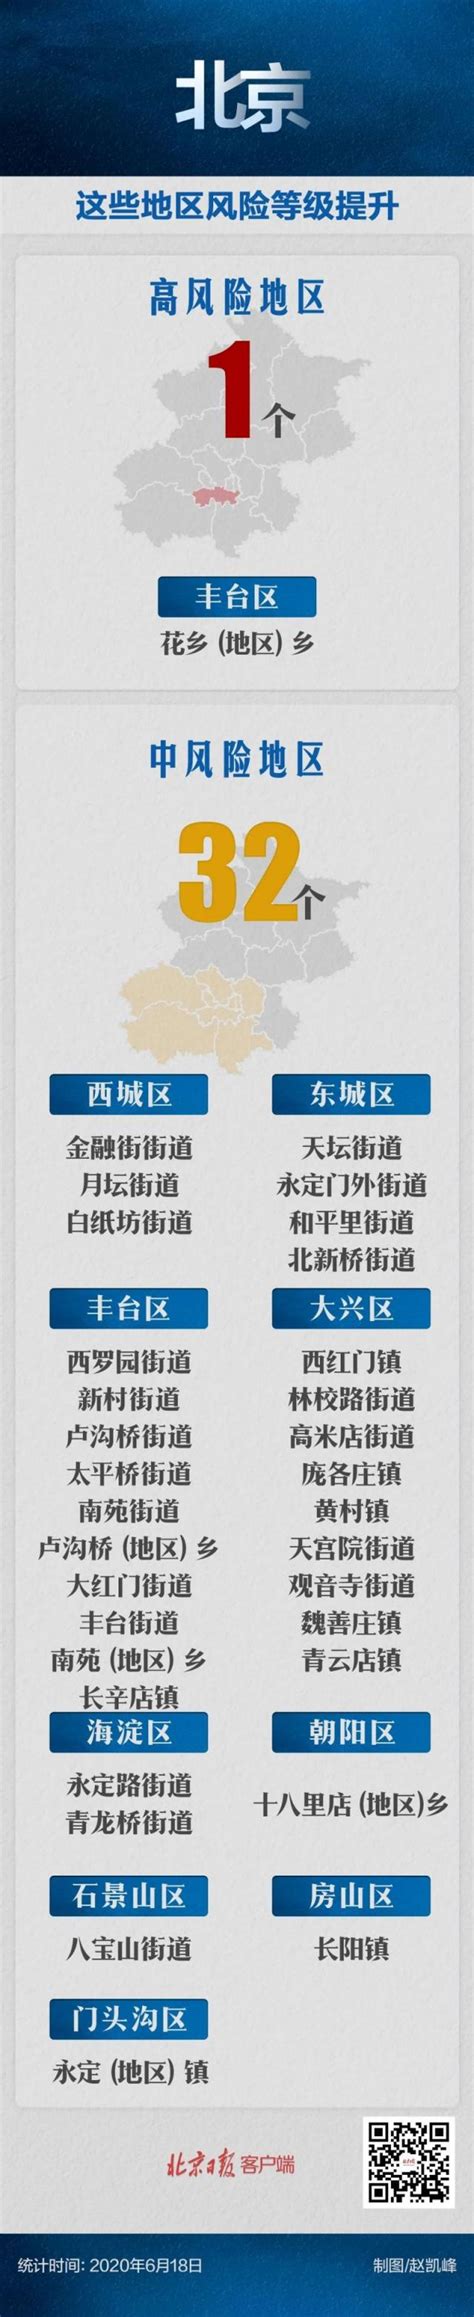 2020最新北京疫情风险等级查询 区域划分名单一览表（图） | 海波不休